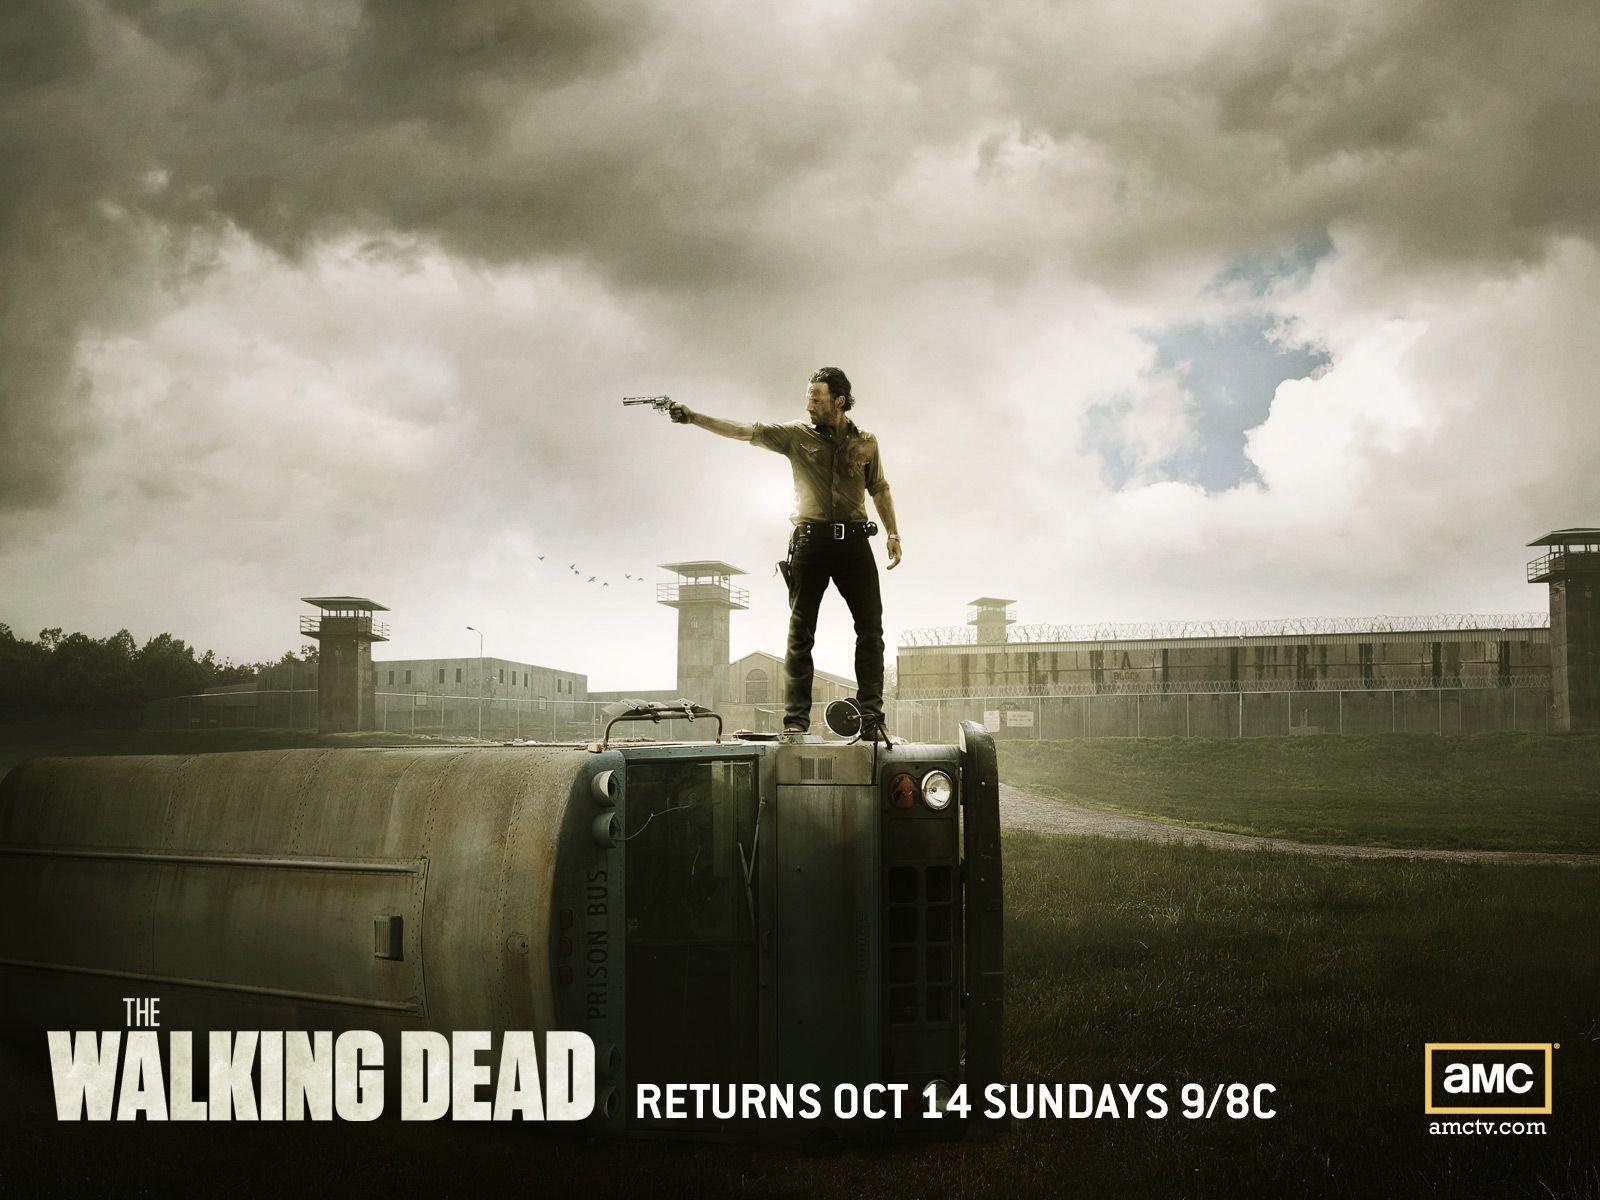 Rick Grimes Walking Dead Prison Wallpaper. The Walking Dead